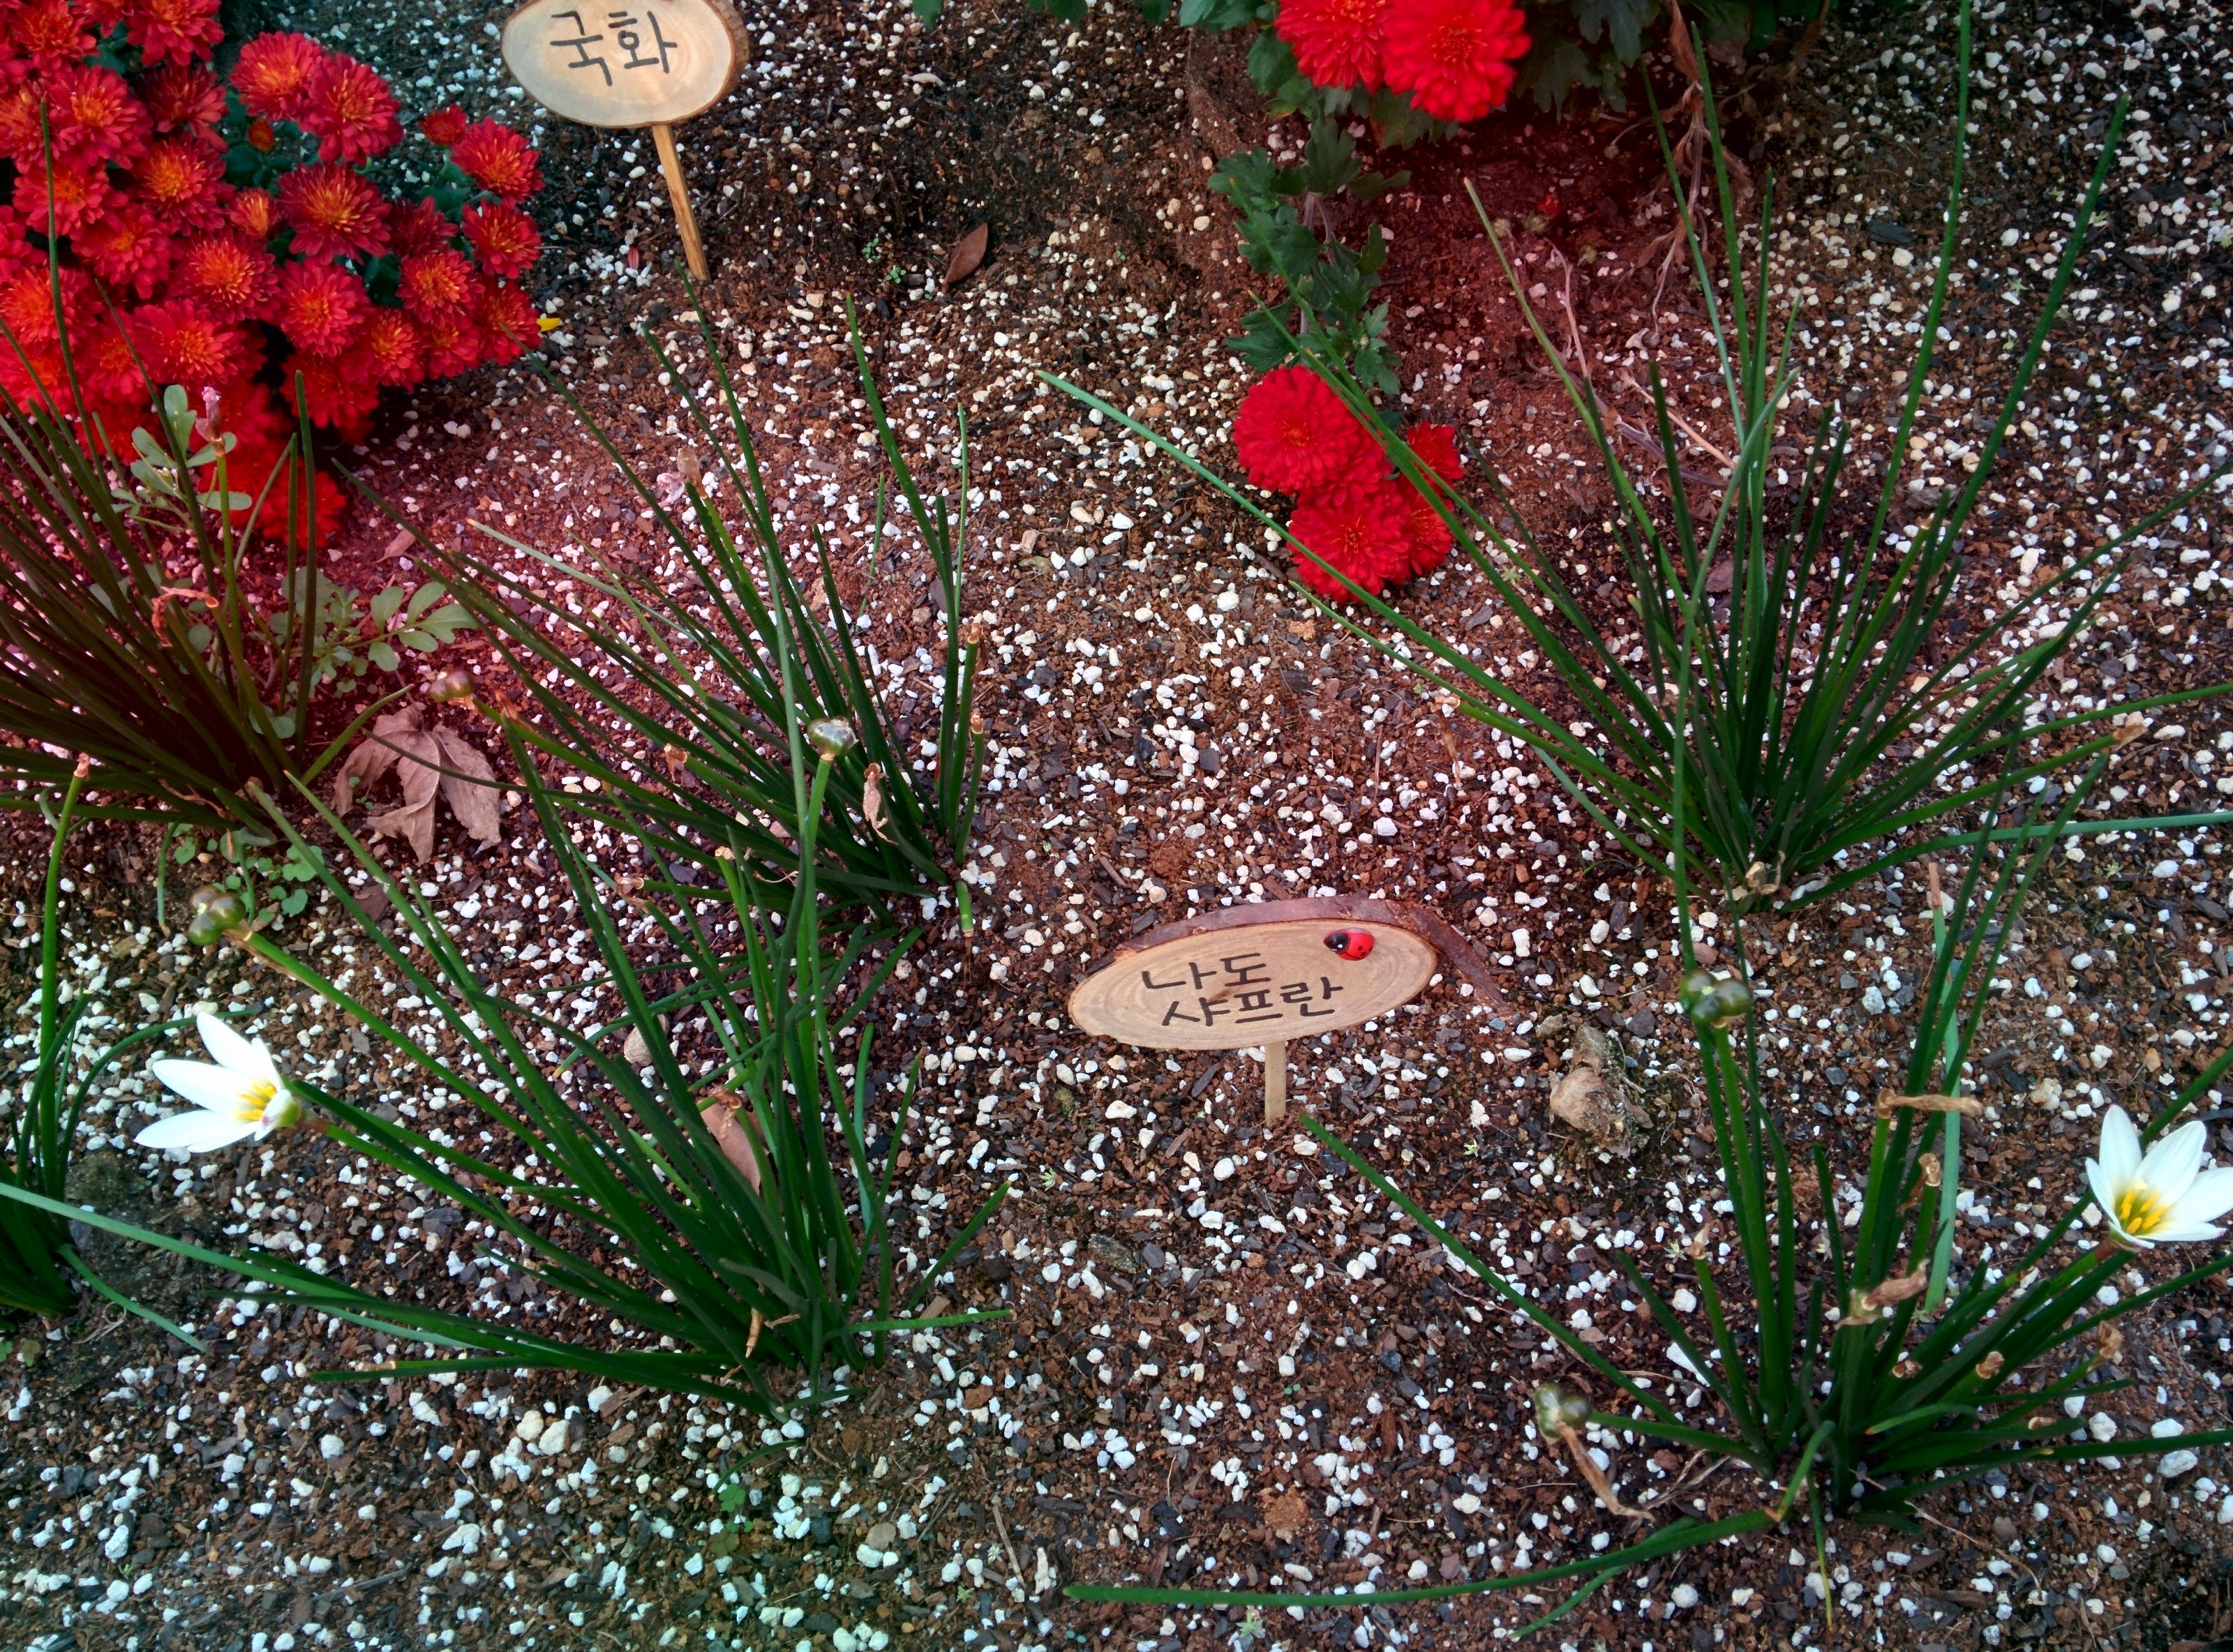 IMG_20151008_171632.jpg 과기원 울타리 작은 화단의 나도샤프란 열매와 흰색 꽃